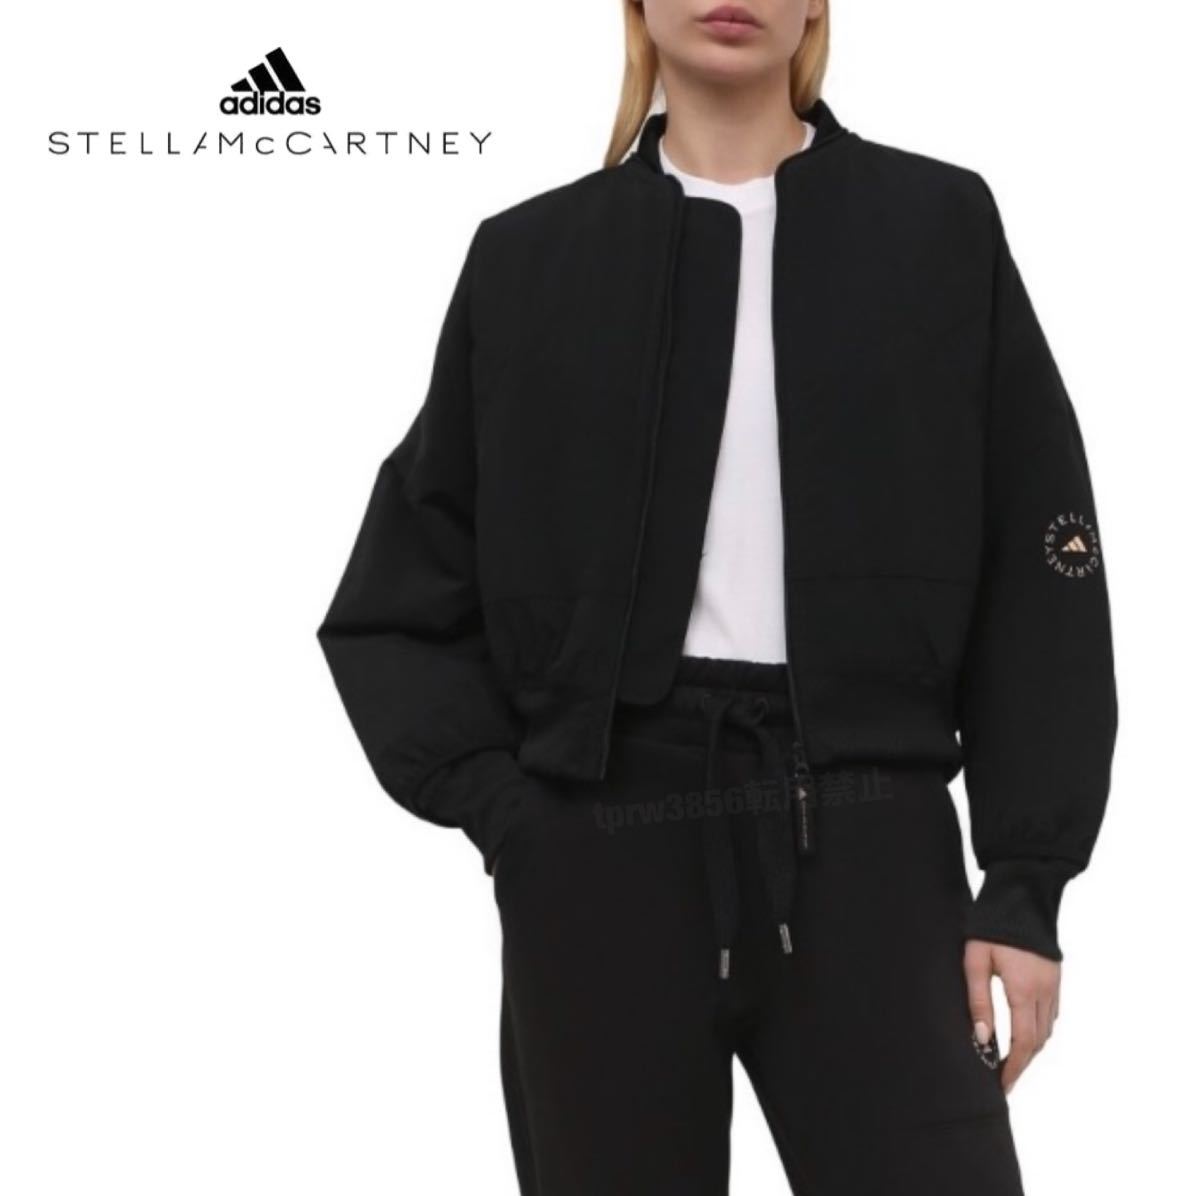  новый товар не использовался adidas Stella McCartney [M] обычная цена 28600 иен жакет Stella McCartney Bomber MA-1 внешний Adidas верхняя одежда 7542